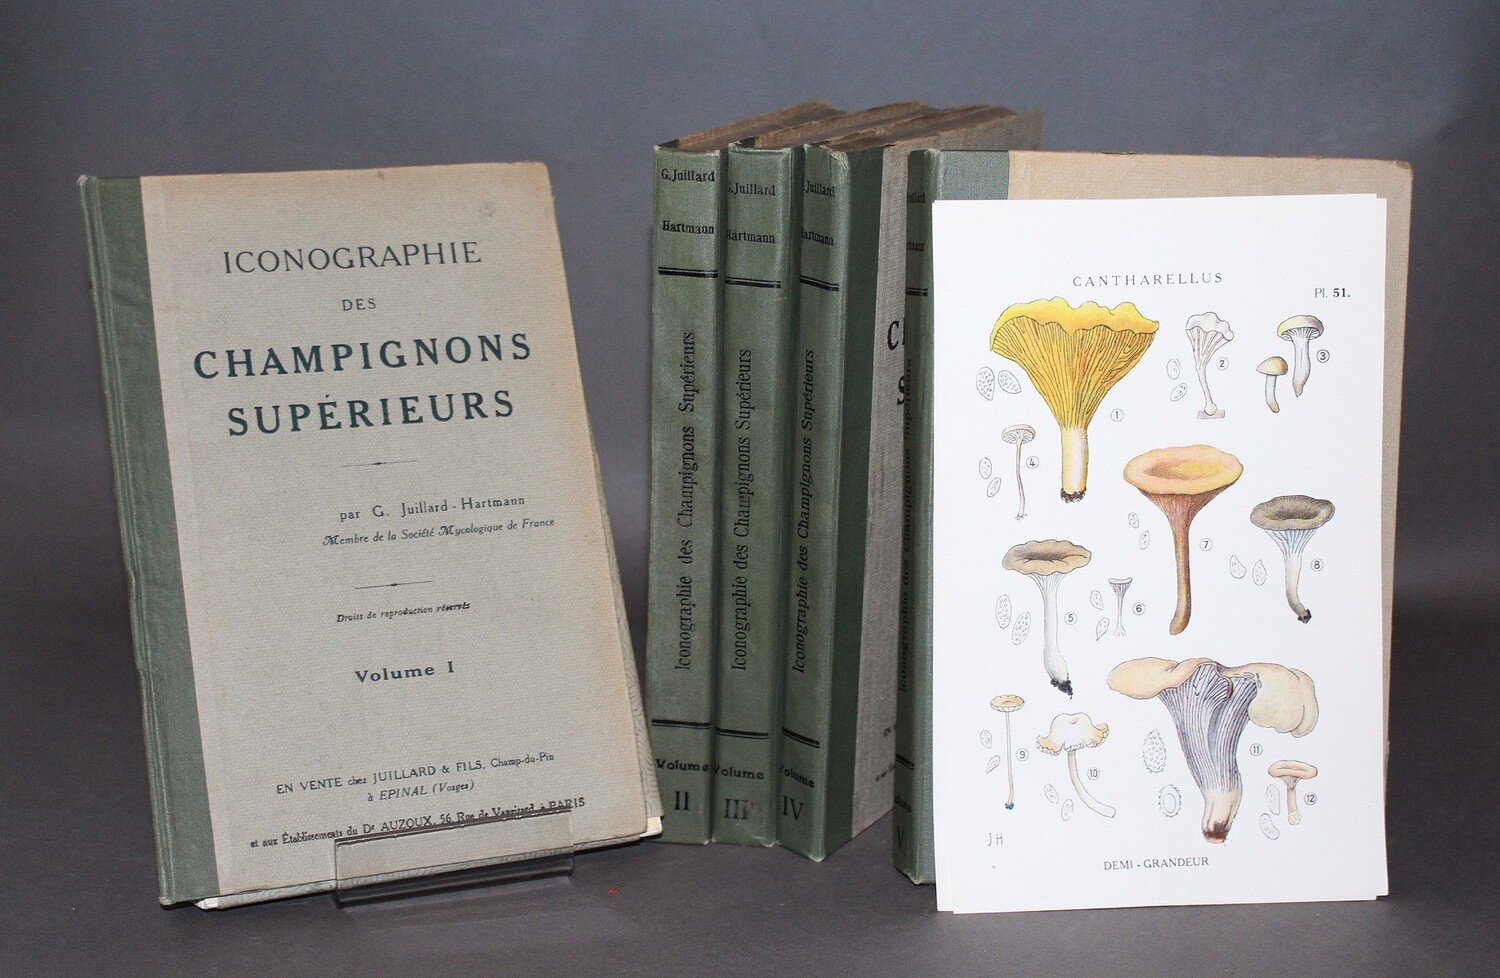 JUILLARD-HARTMANN.- Iconographie des champignons supérieurs, 1919. Édition originale ornée de 250 planches en couleurs.